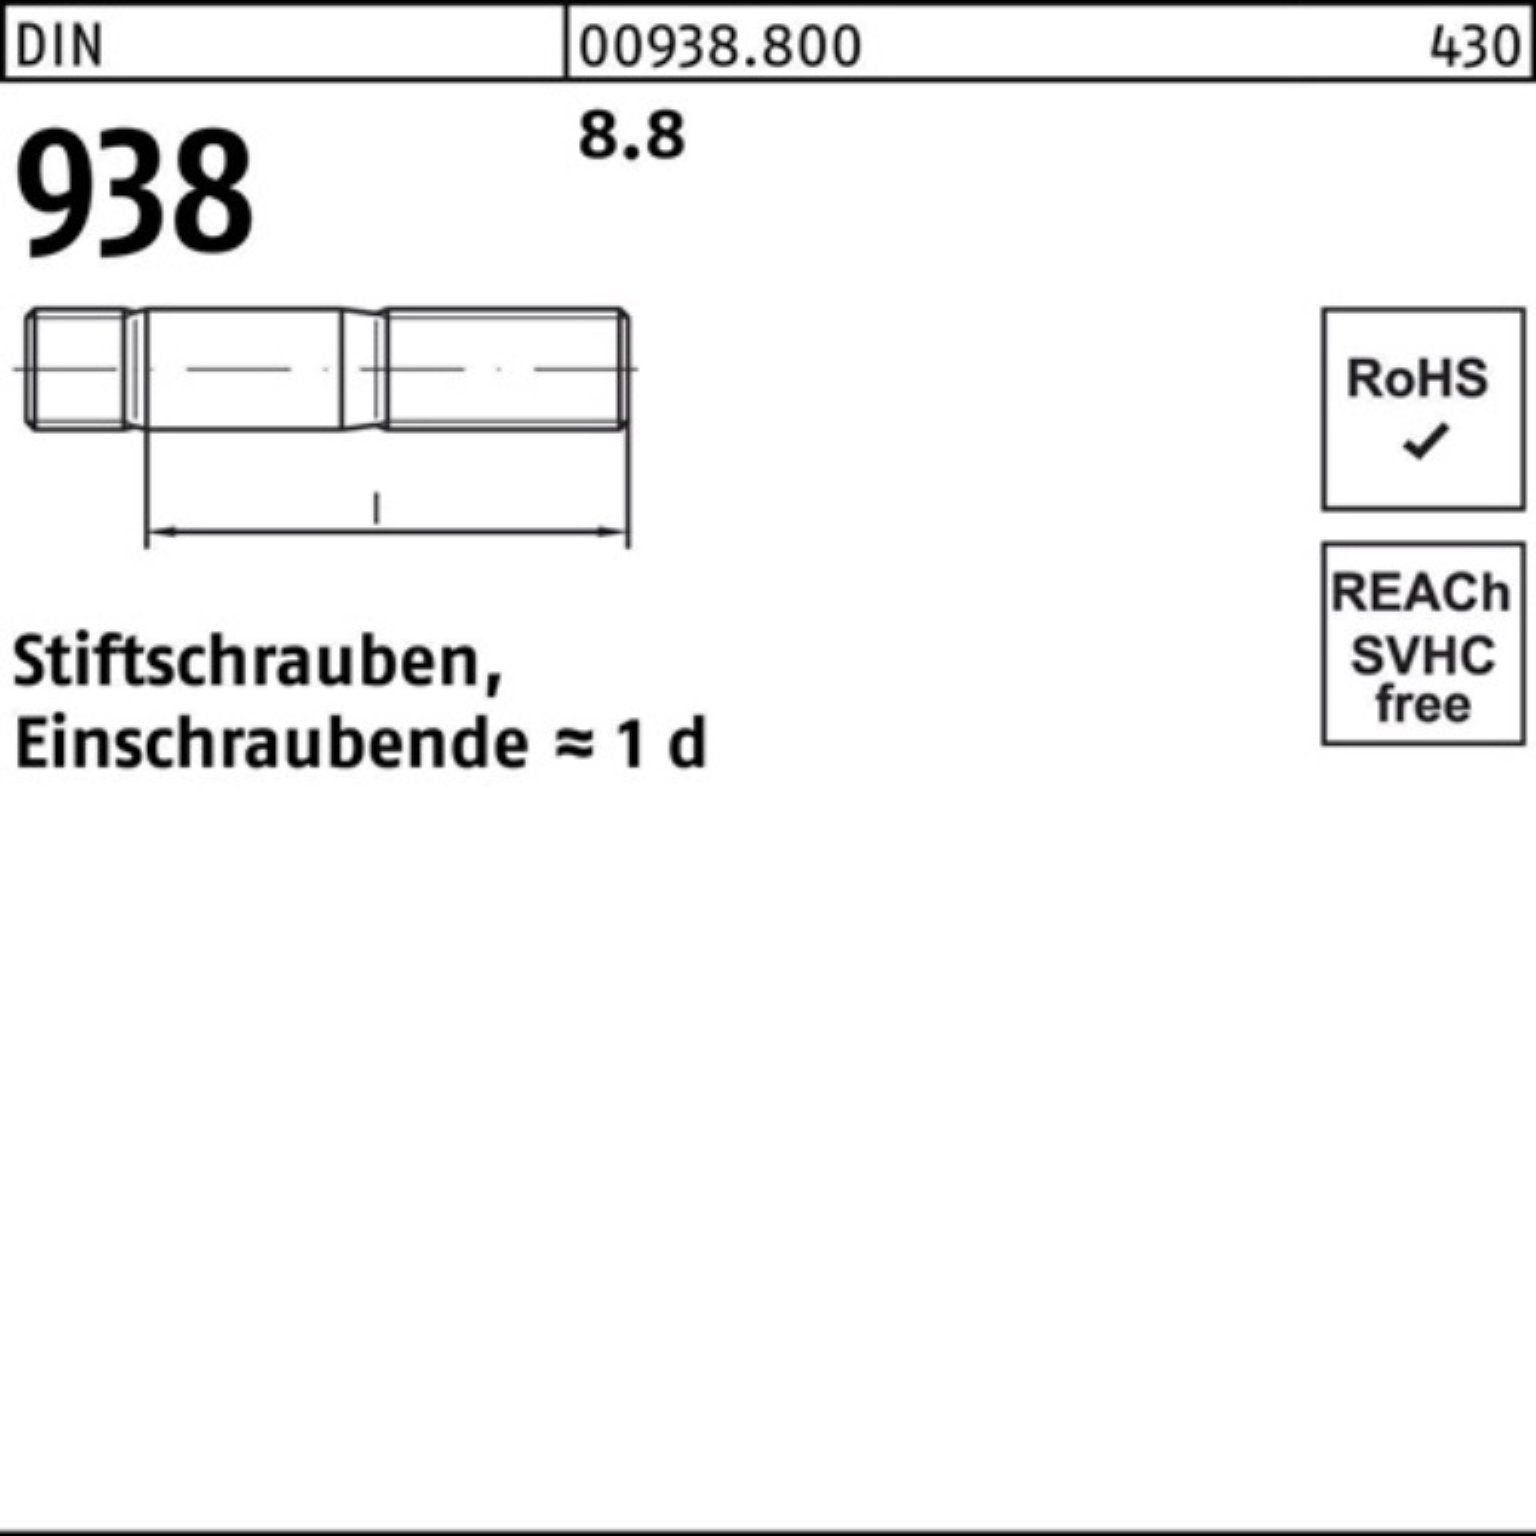 Reyher Stiftschraube 100er M20x Stück 8.8 938 DIN DIN 8.8 70 10 Sti Stiftschraube Pack 938